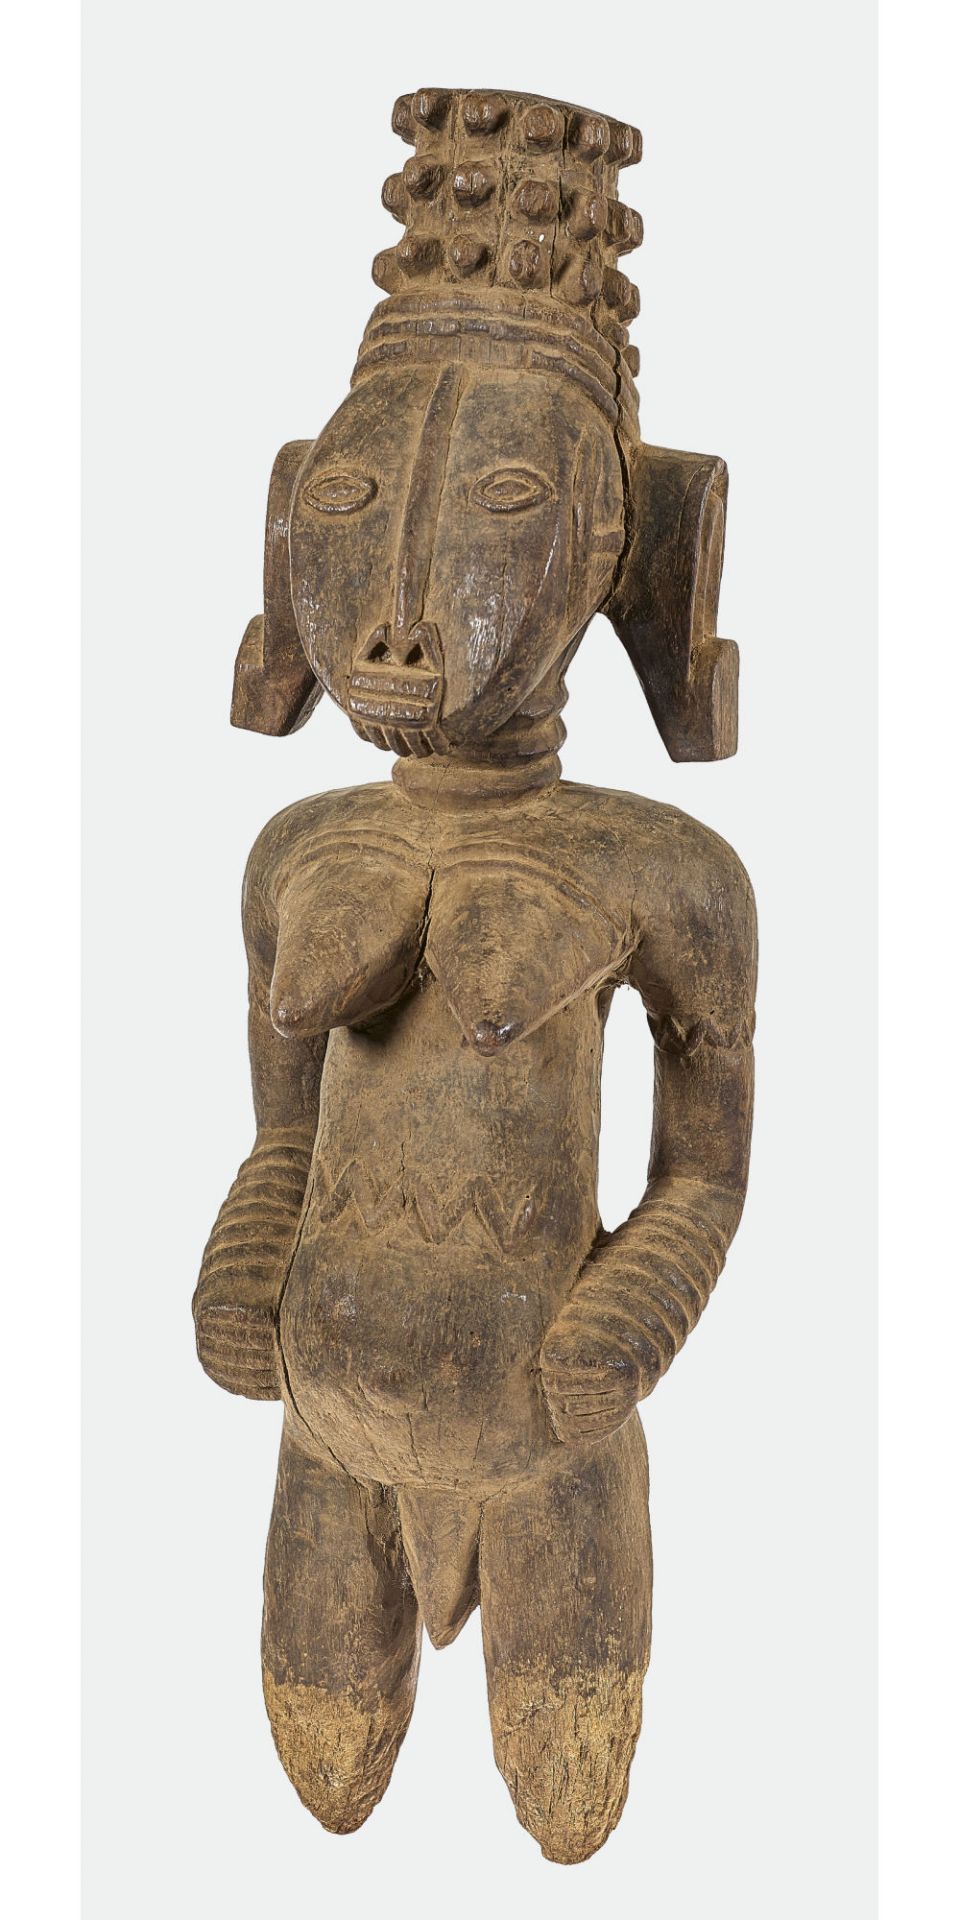 NIGERIA: Yukun-Figur, Wubo, spätes 19. Jh.